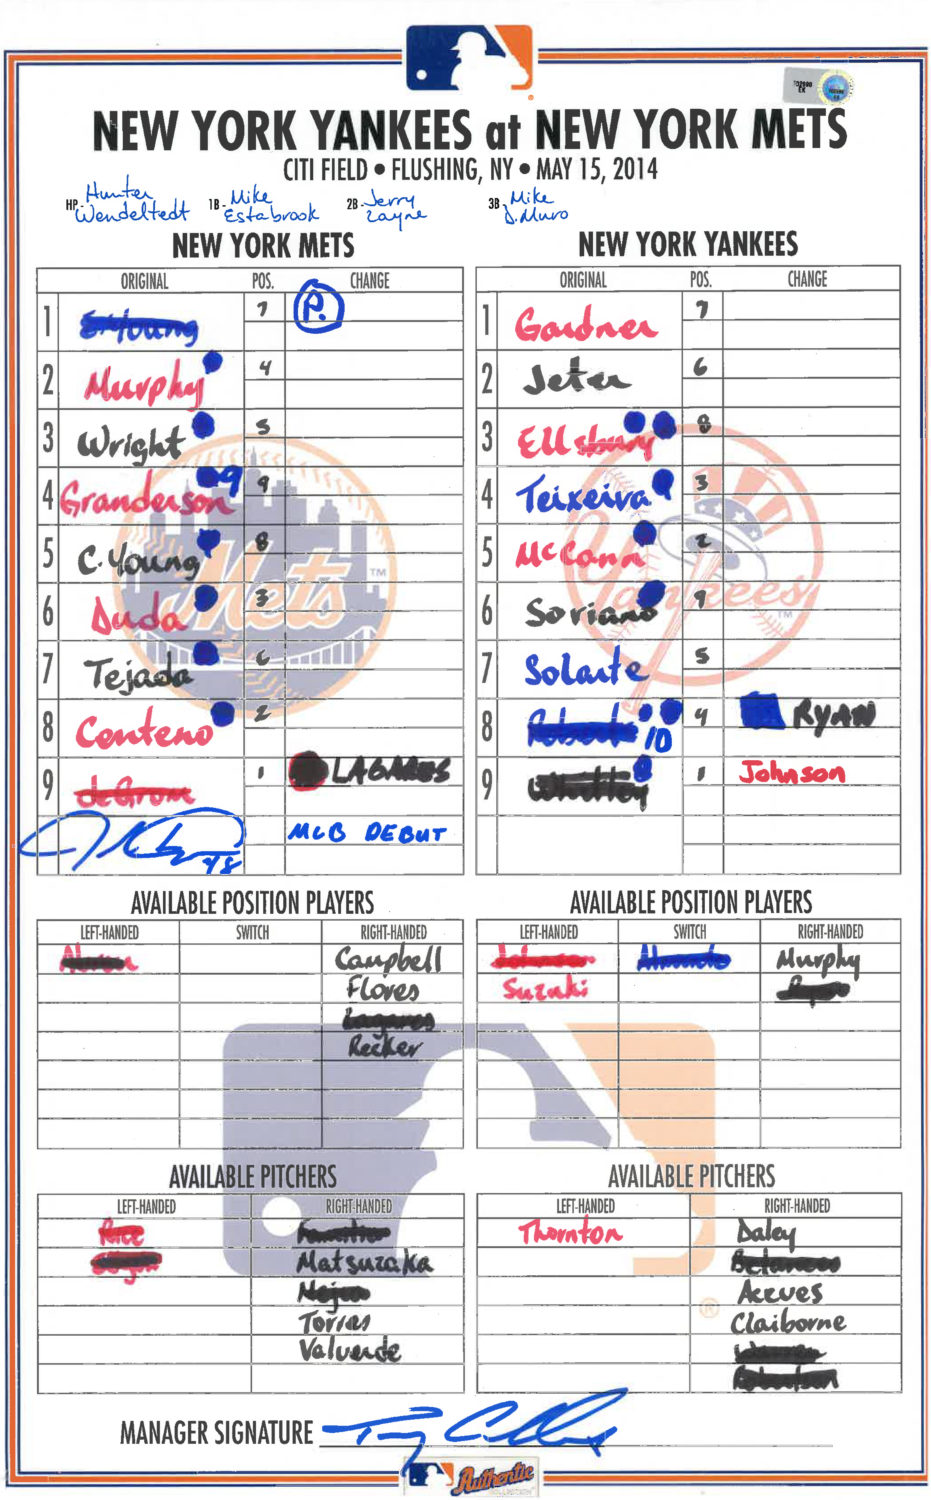 Lineup Card: Jacob deGrom's MLB Debut